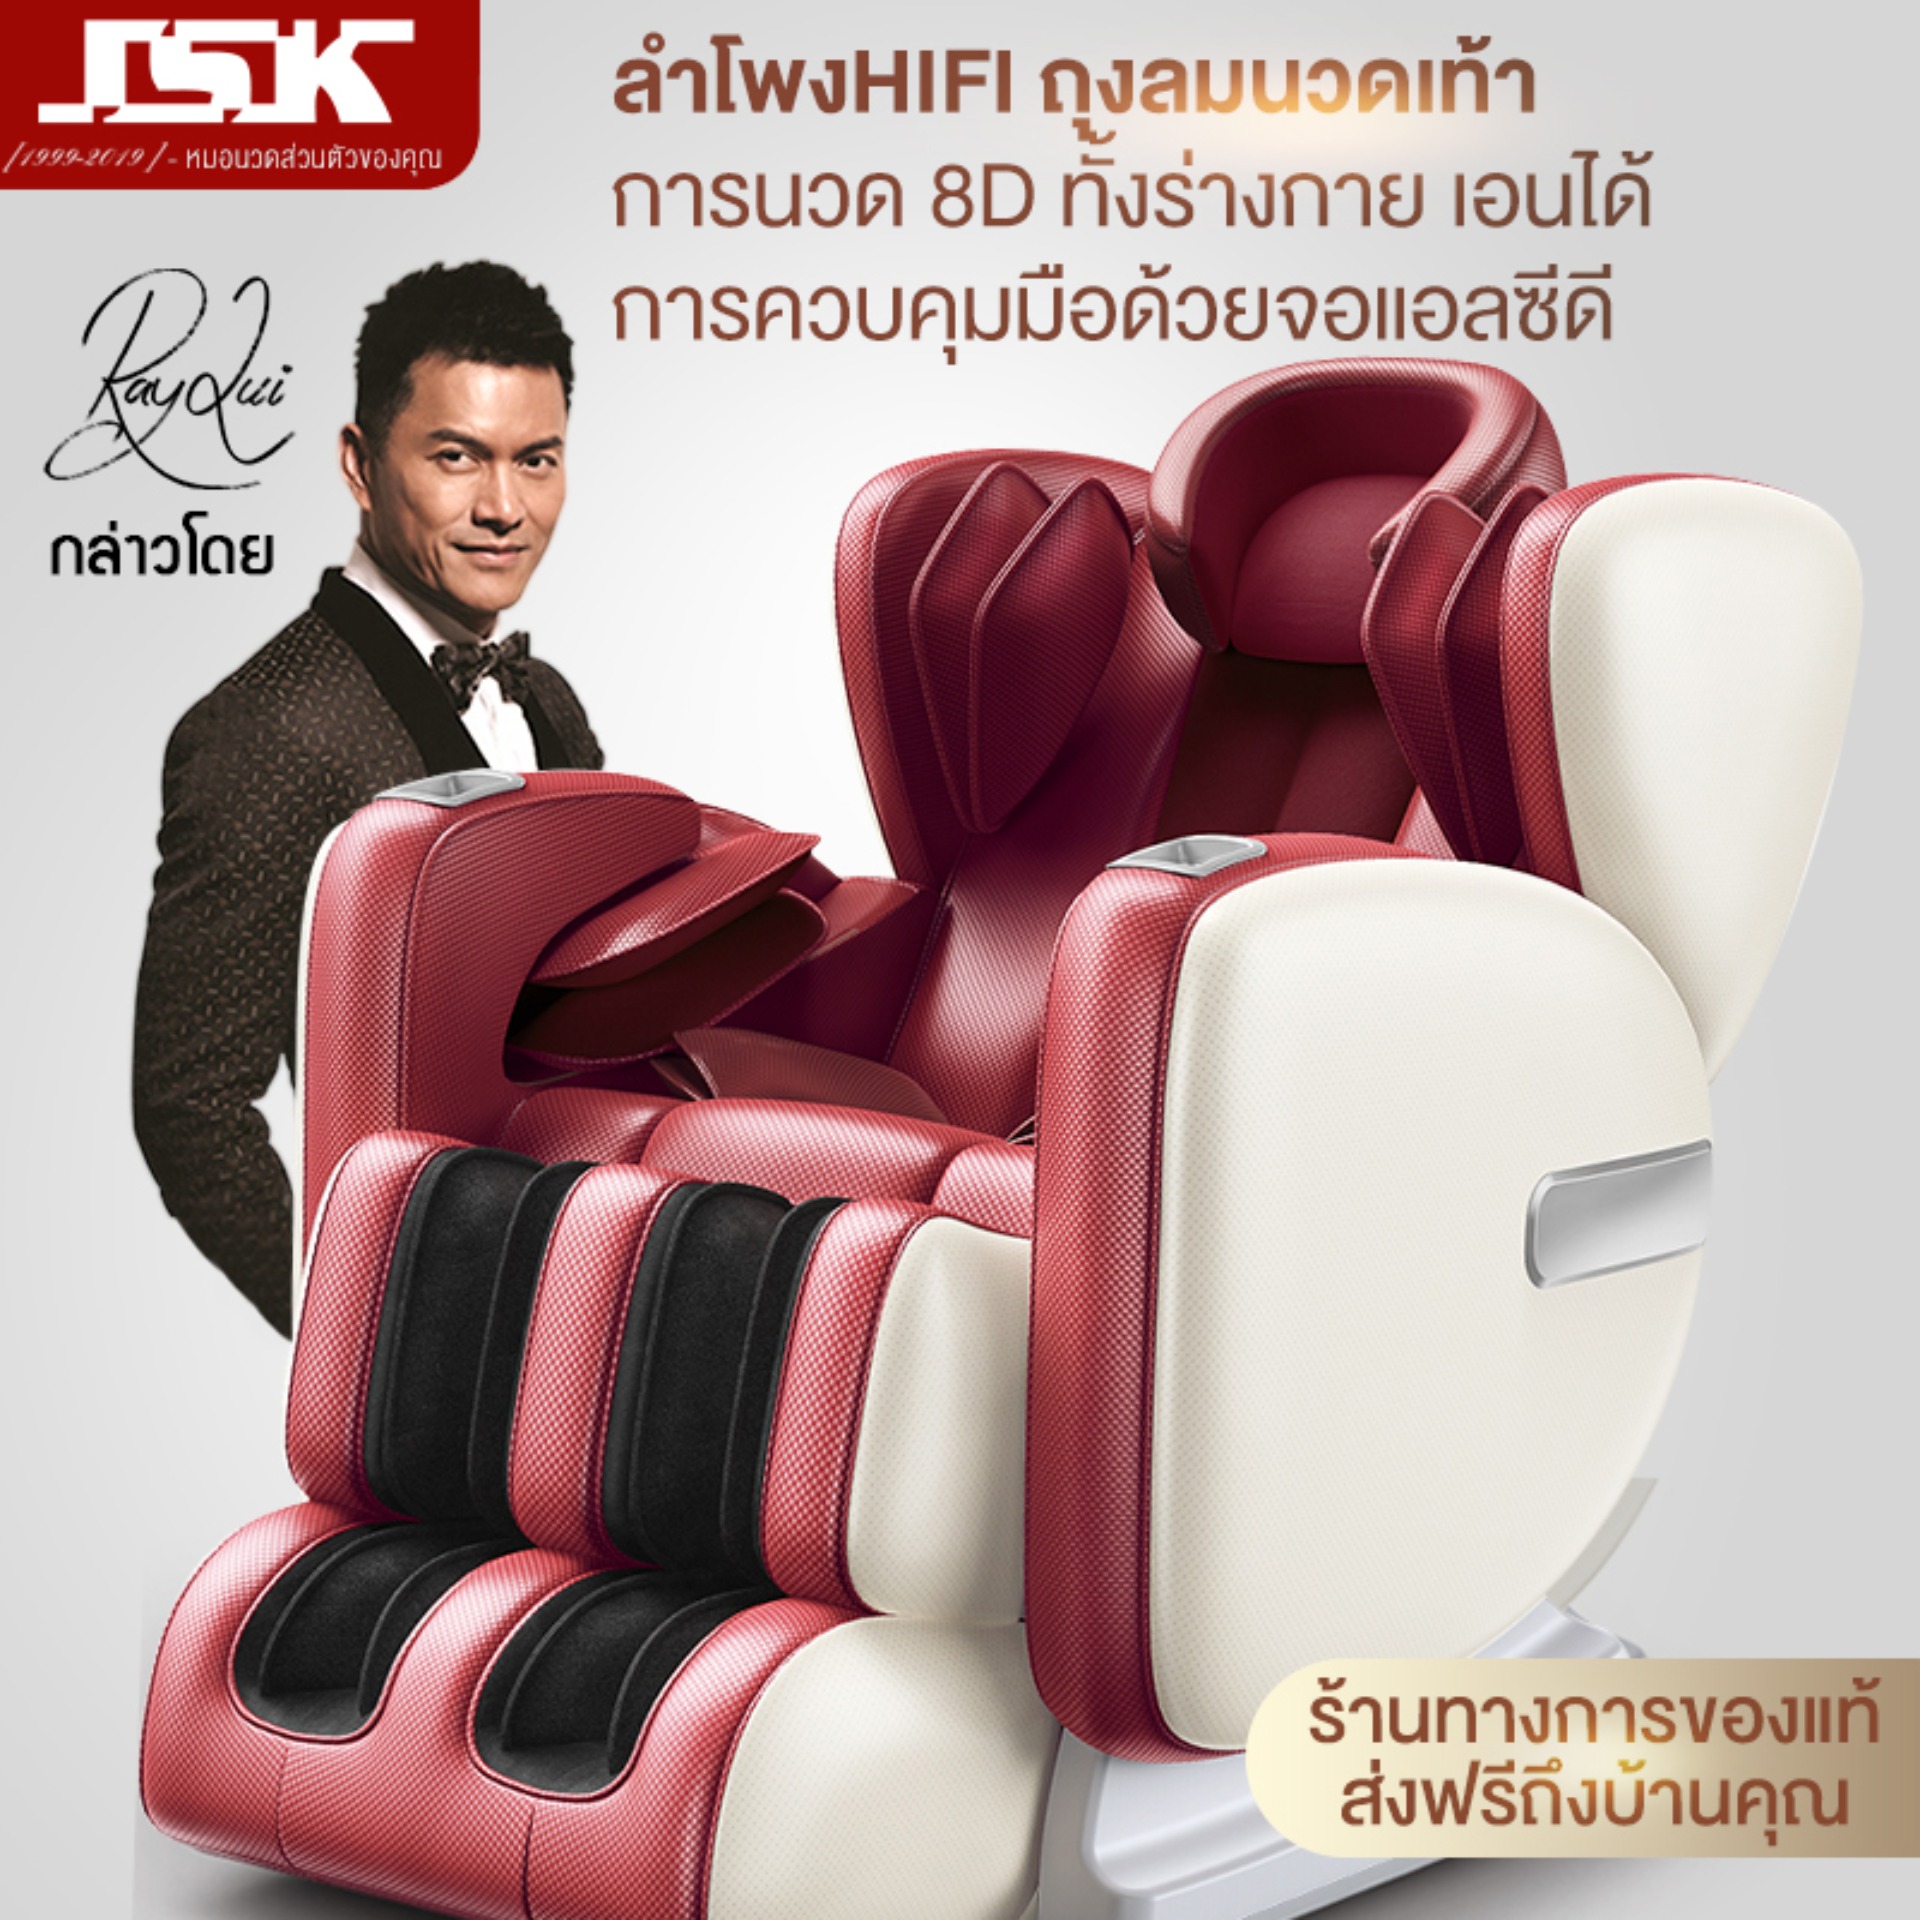 เก้าอี้นวด เก้าอี้นวดบ้านเต็มรูปแบบอัตโนมัติมัลติฟังก์ชั่มินิคอมพิวเตอร์พื้นที่ห้องโดยสารหรูหราไฟฟ้าโซฟาผู้สูงอายุ Massage Chair JSK